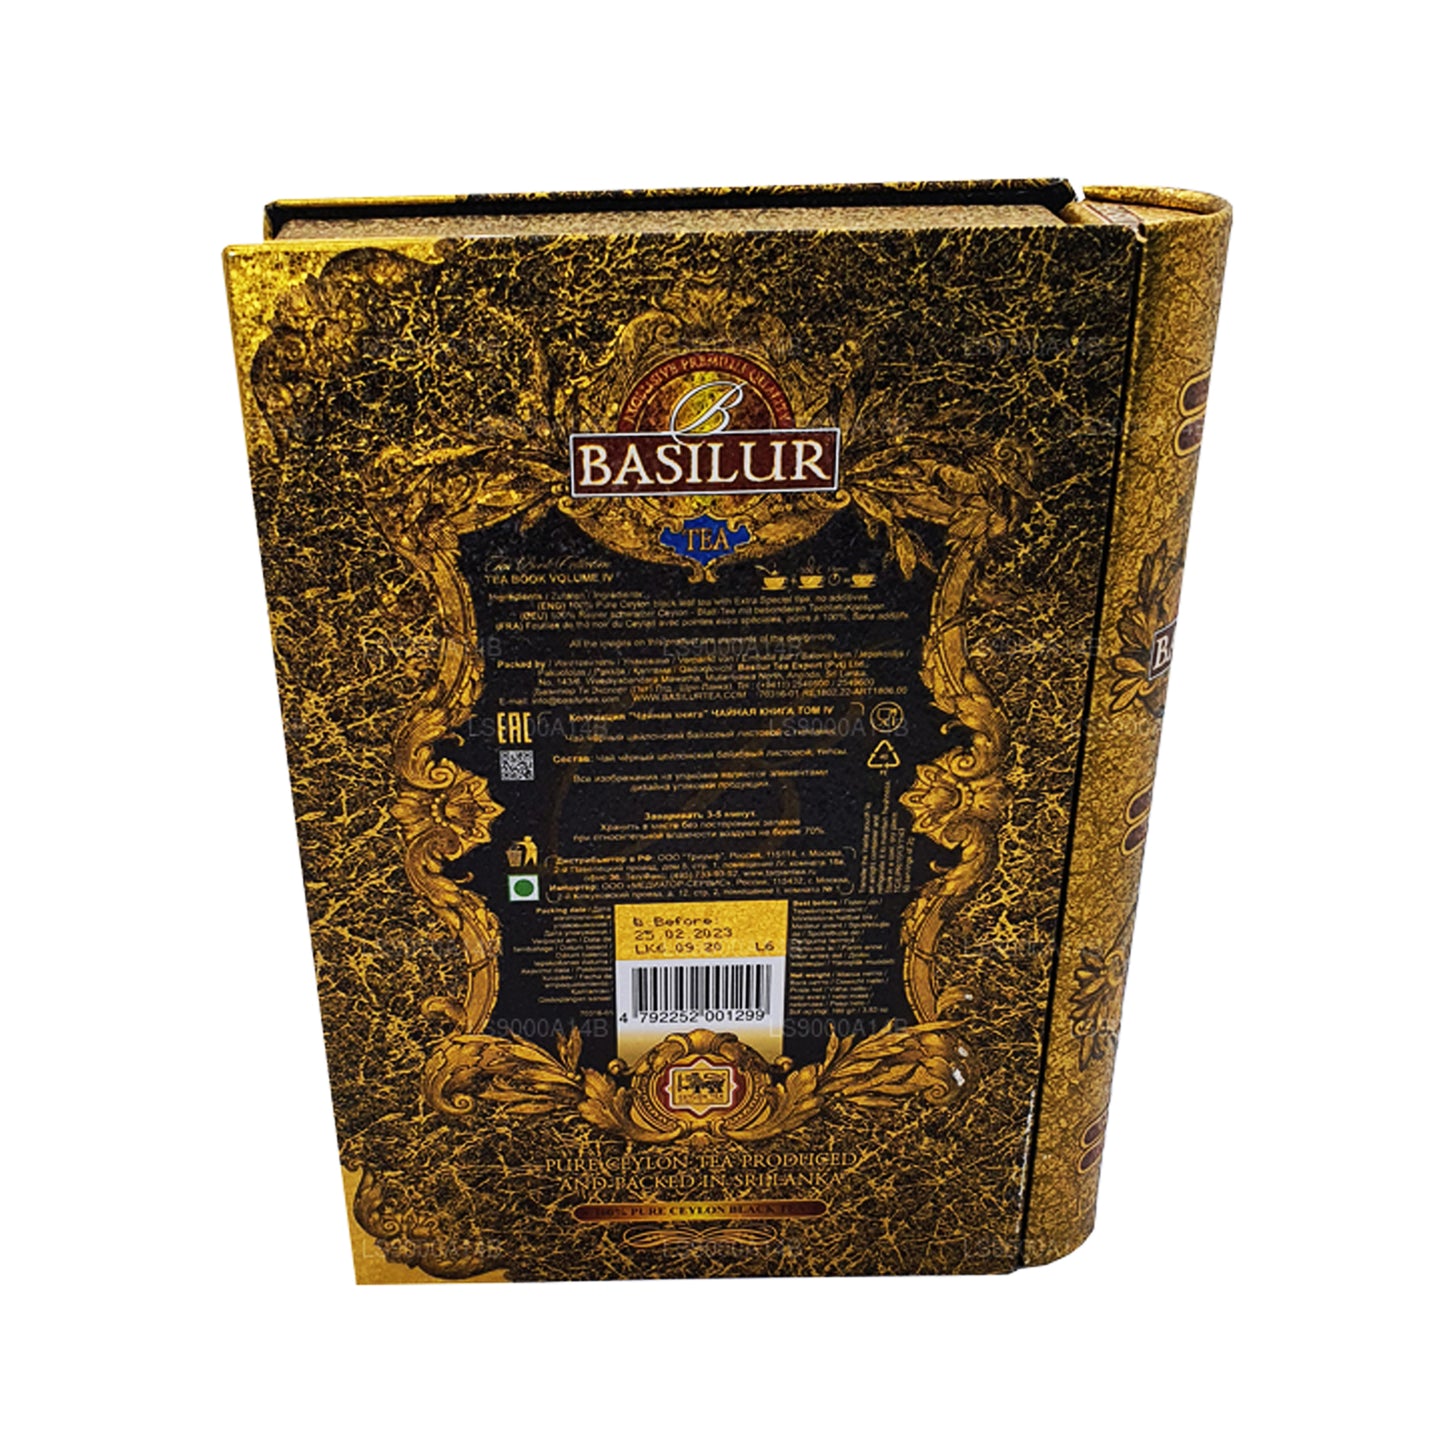 Libro de té Basilur, volumen IV (100 g)